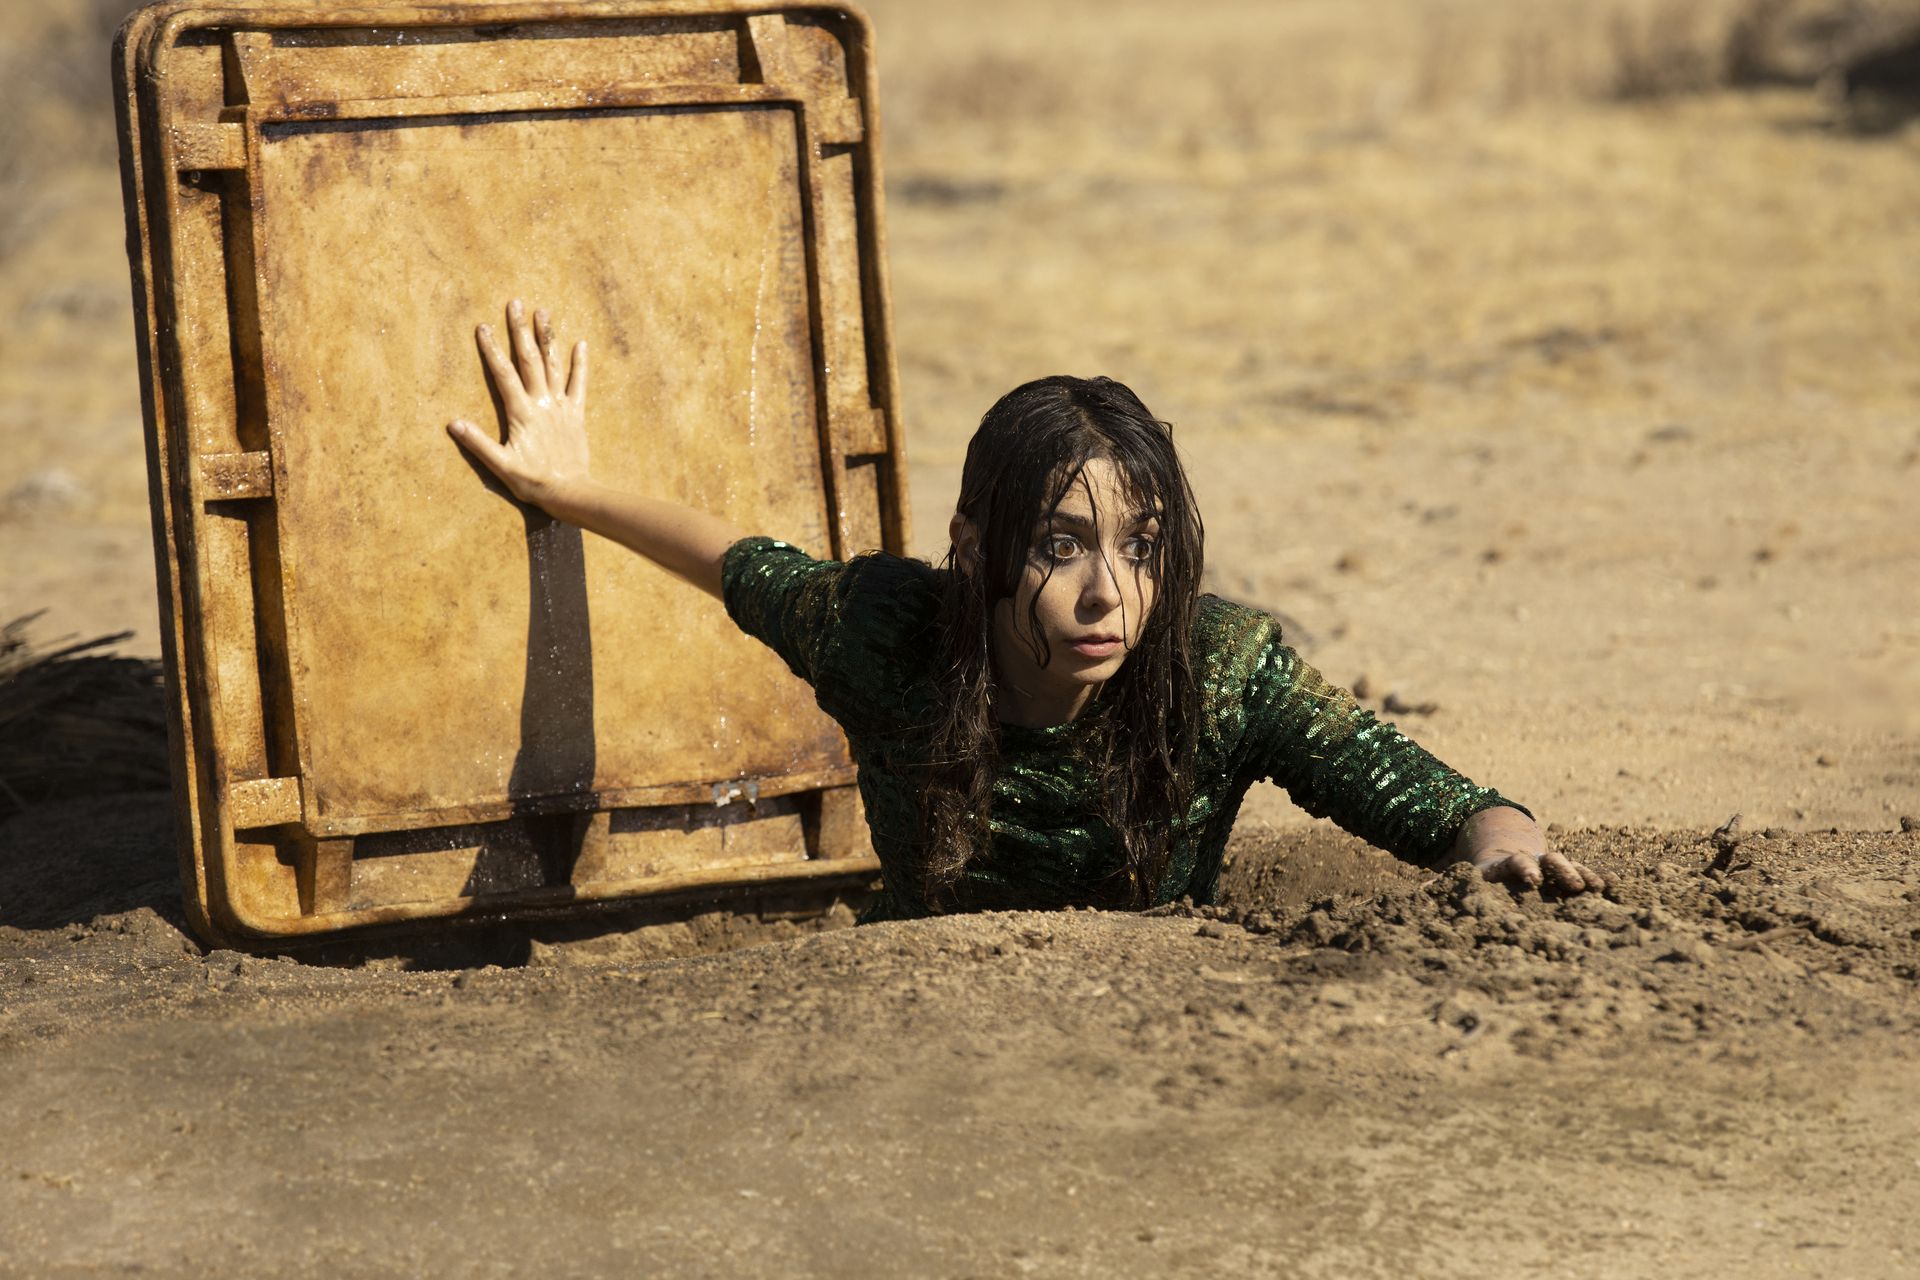 كريستين ميليوتي بدور عسلي في Made for Love ، يتسلق من الفتحة المعدنية إلى مجرى مائي تحت الأرض في الصحراء.